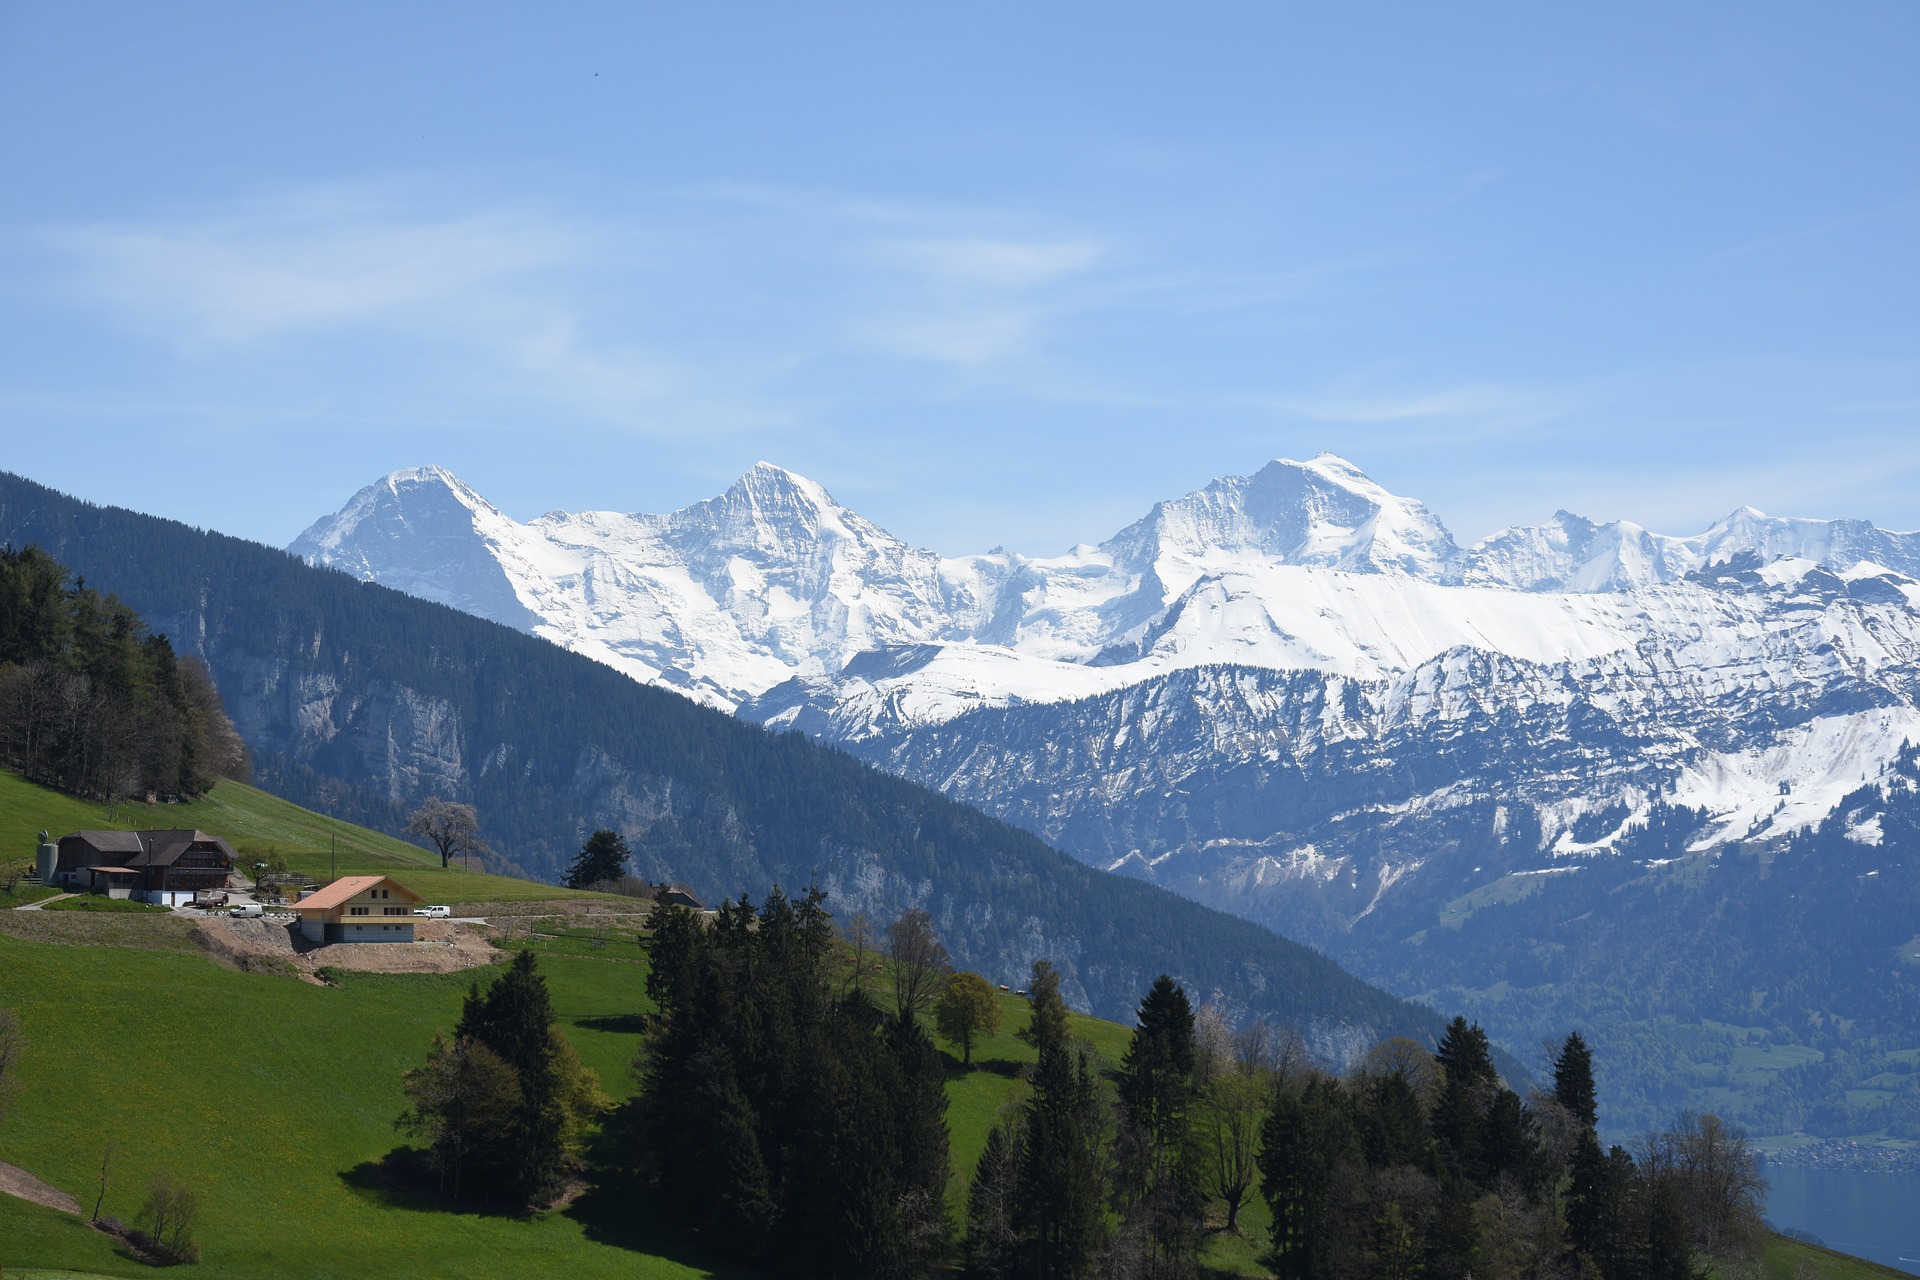 SWITZERLAND REVIEW|スイス お客様の声